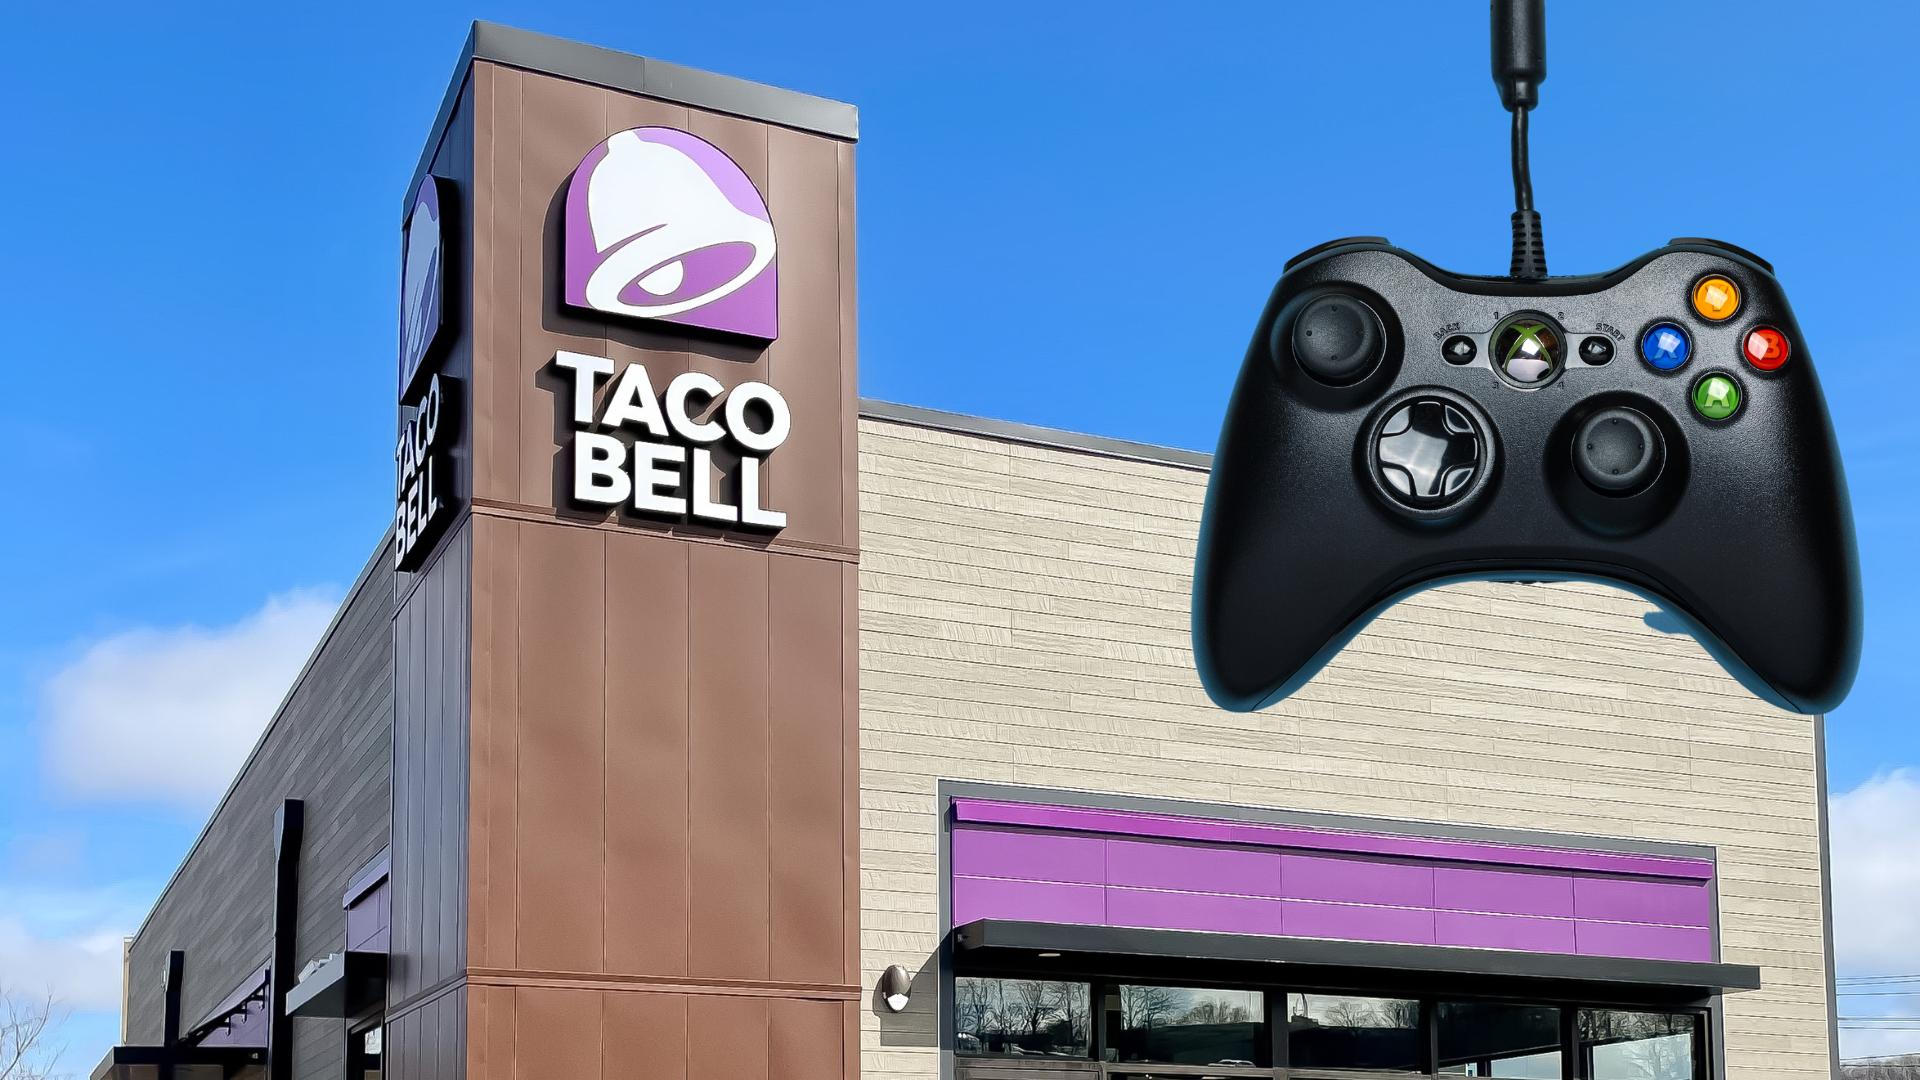 Le restaurant Taco Bell et la manette Xbox représentent la collaboration